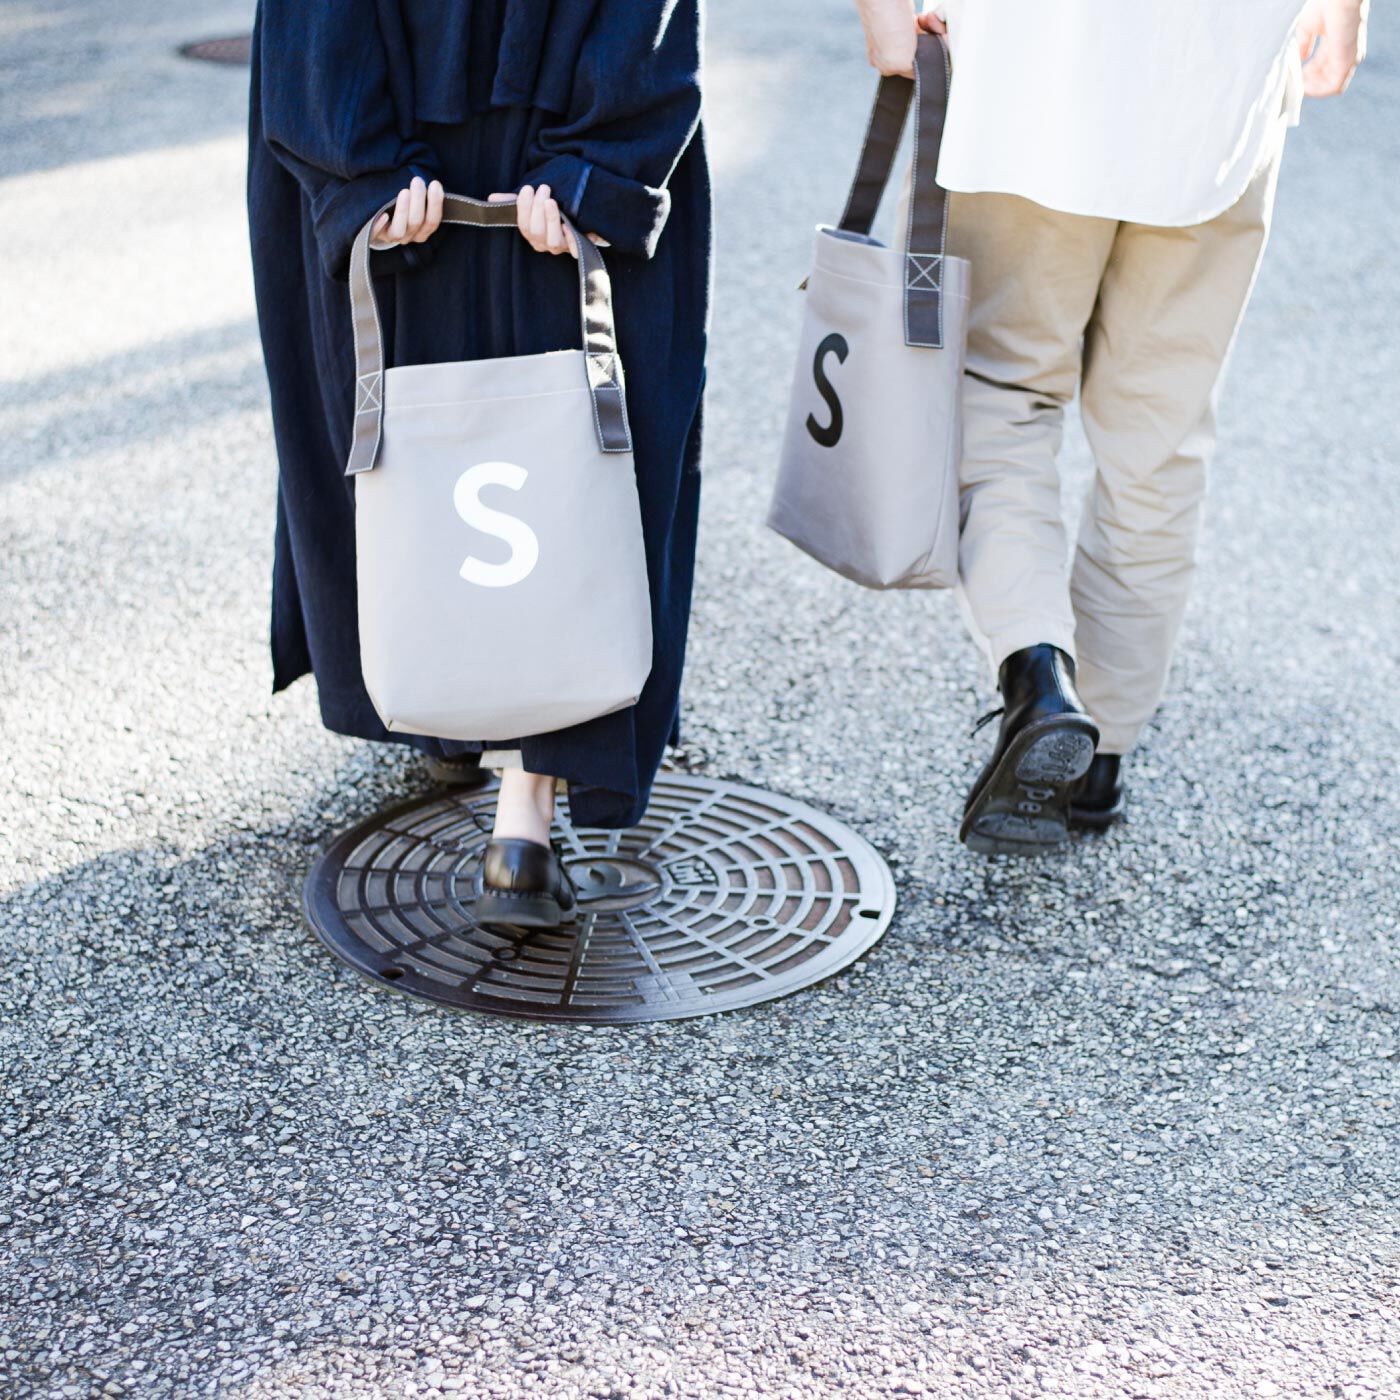 SeeMONO|お散歩にぴったりサイズ 倉敷帆布のワンループトートバッグ|ユニセックスなデザインは家族やカップル、友人同士で一緒に使っても。